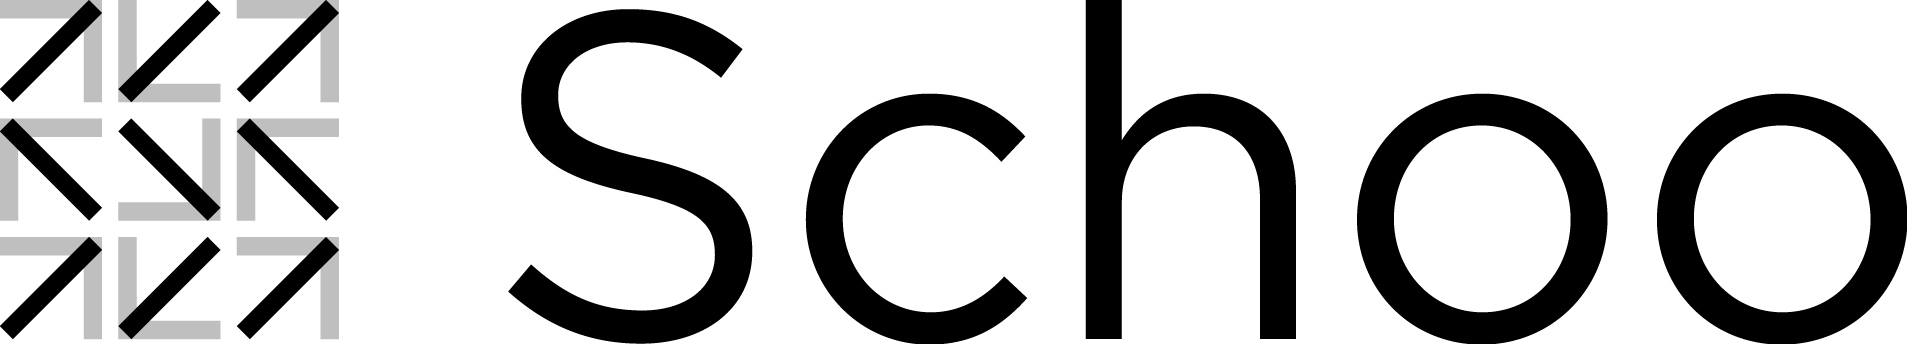 株式会社Schoo企業ロゴ